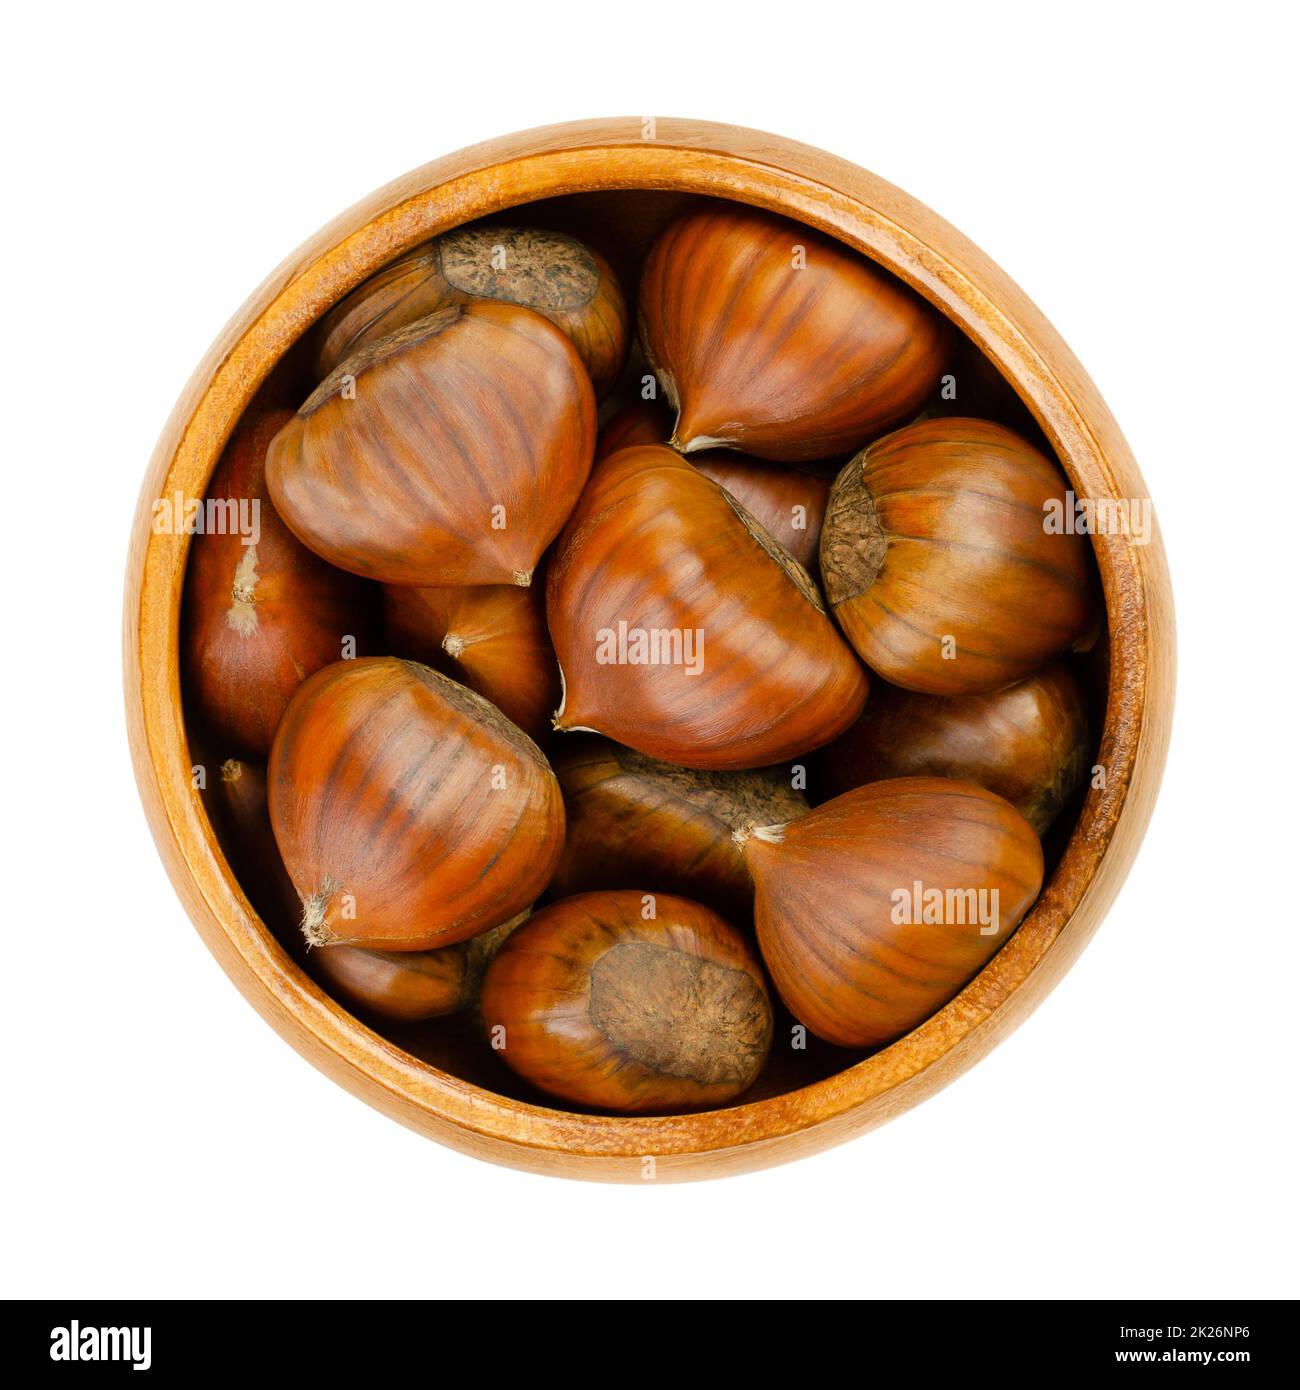 Châtaignes non décortiquées, noix crues de Castanea sativa dans un bol en bois Banque D'Images